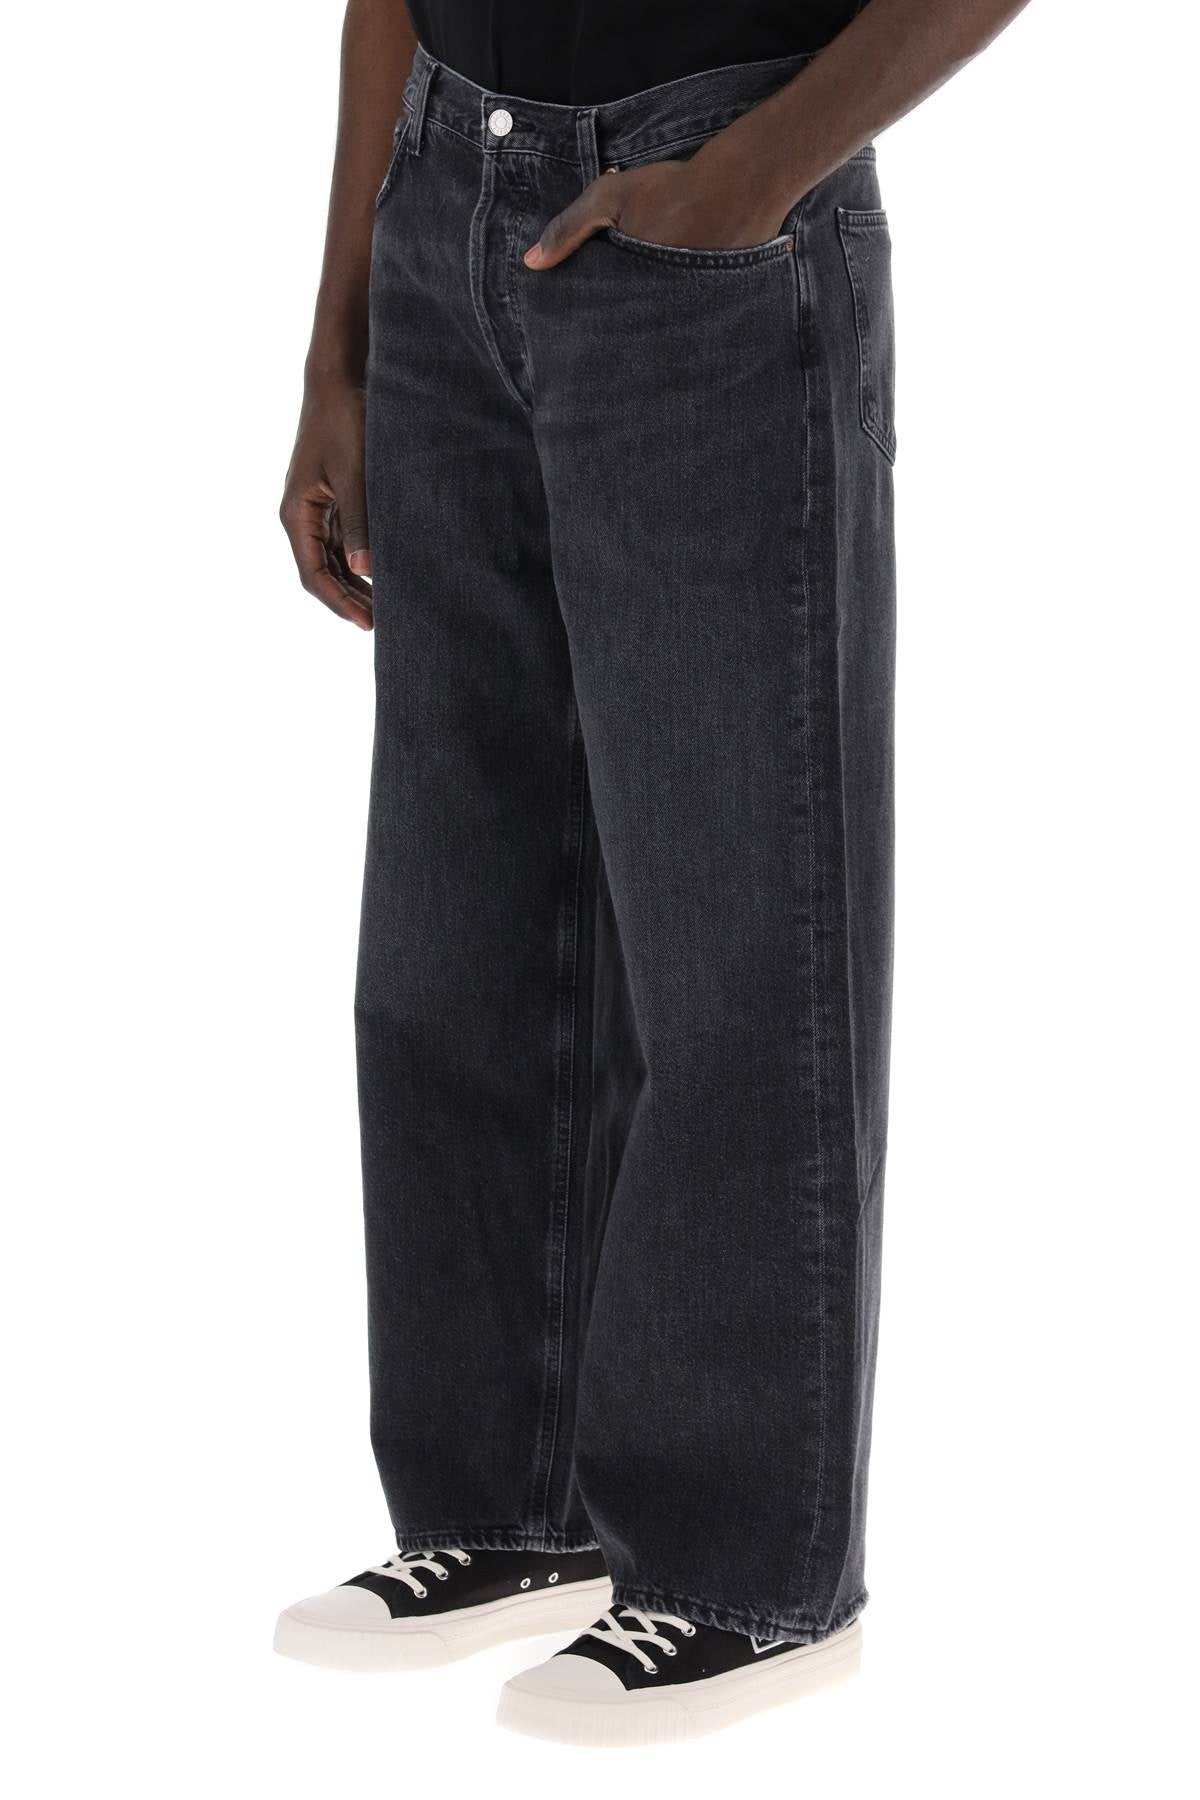 Agolde baggy slung jeans-3